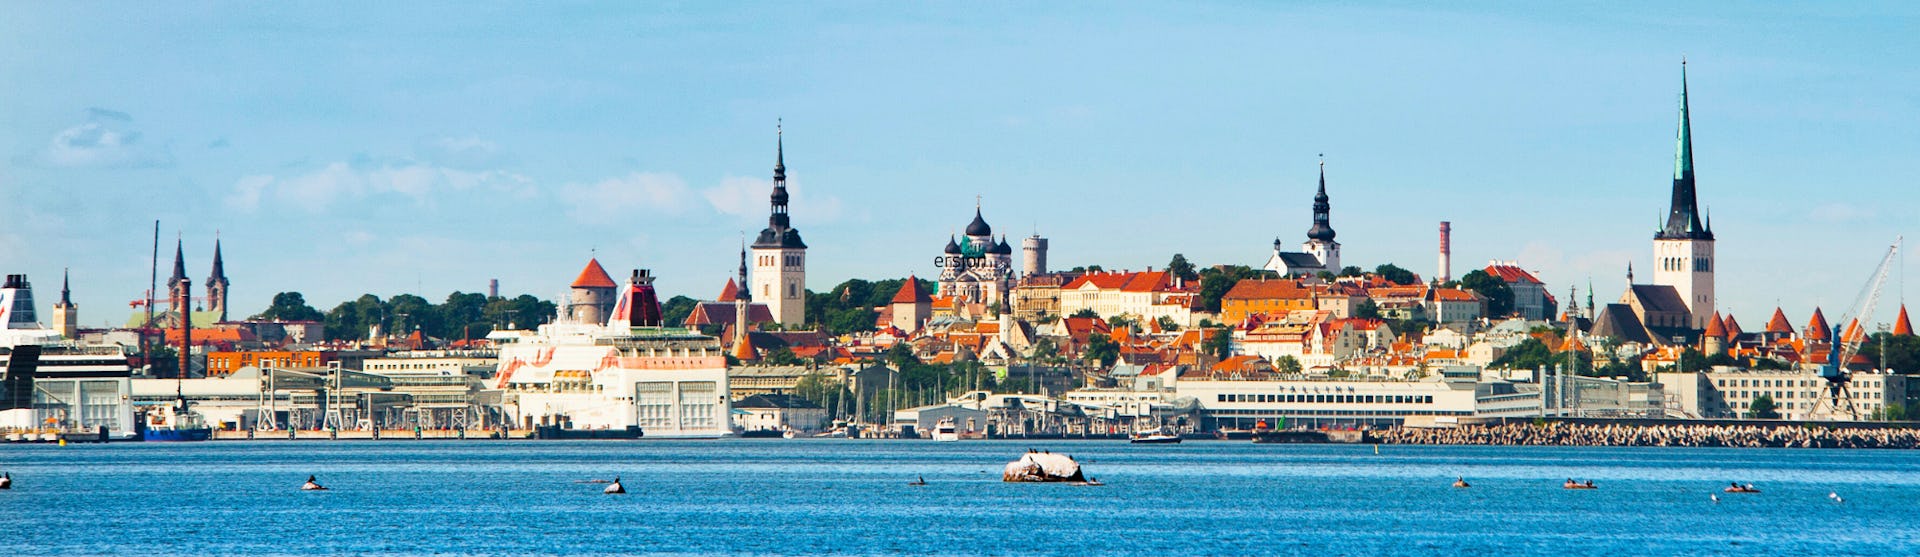 Upplev en kryssning i Östersjön med all sin historia. Bilden är tagen från vattnet mot staden Tallinn i Estland.